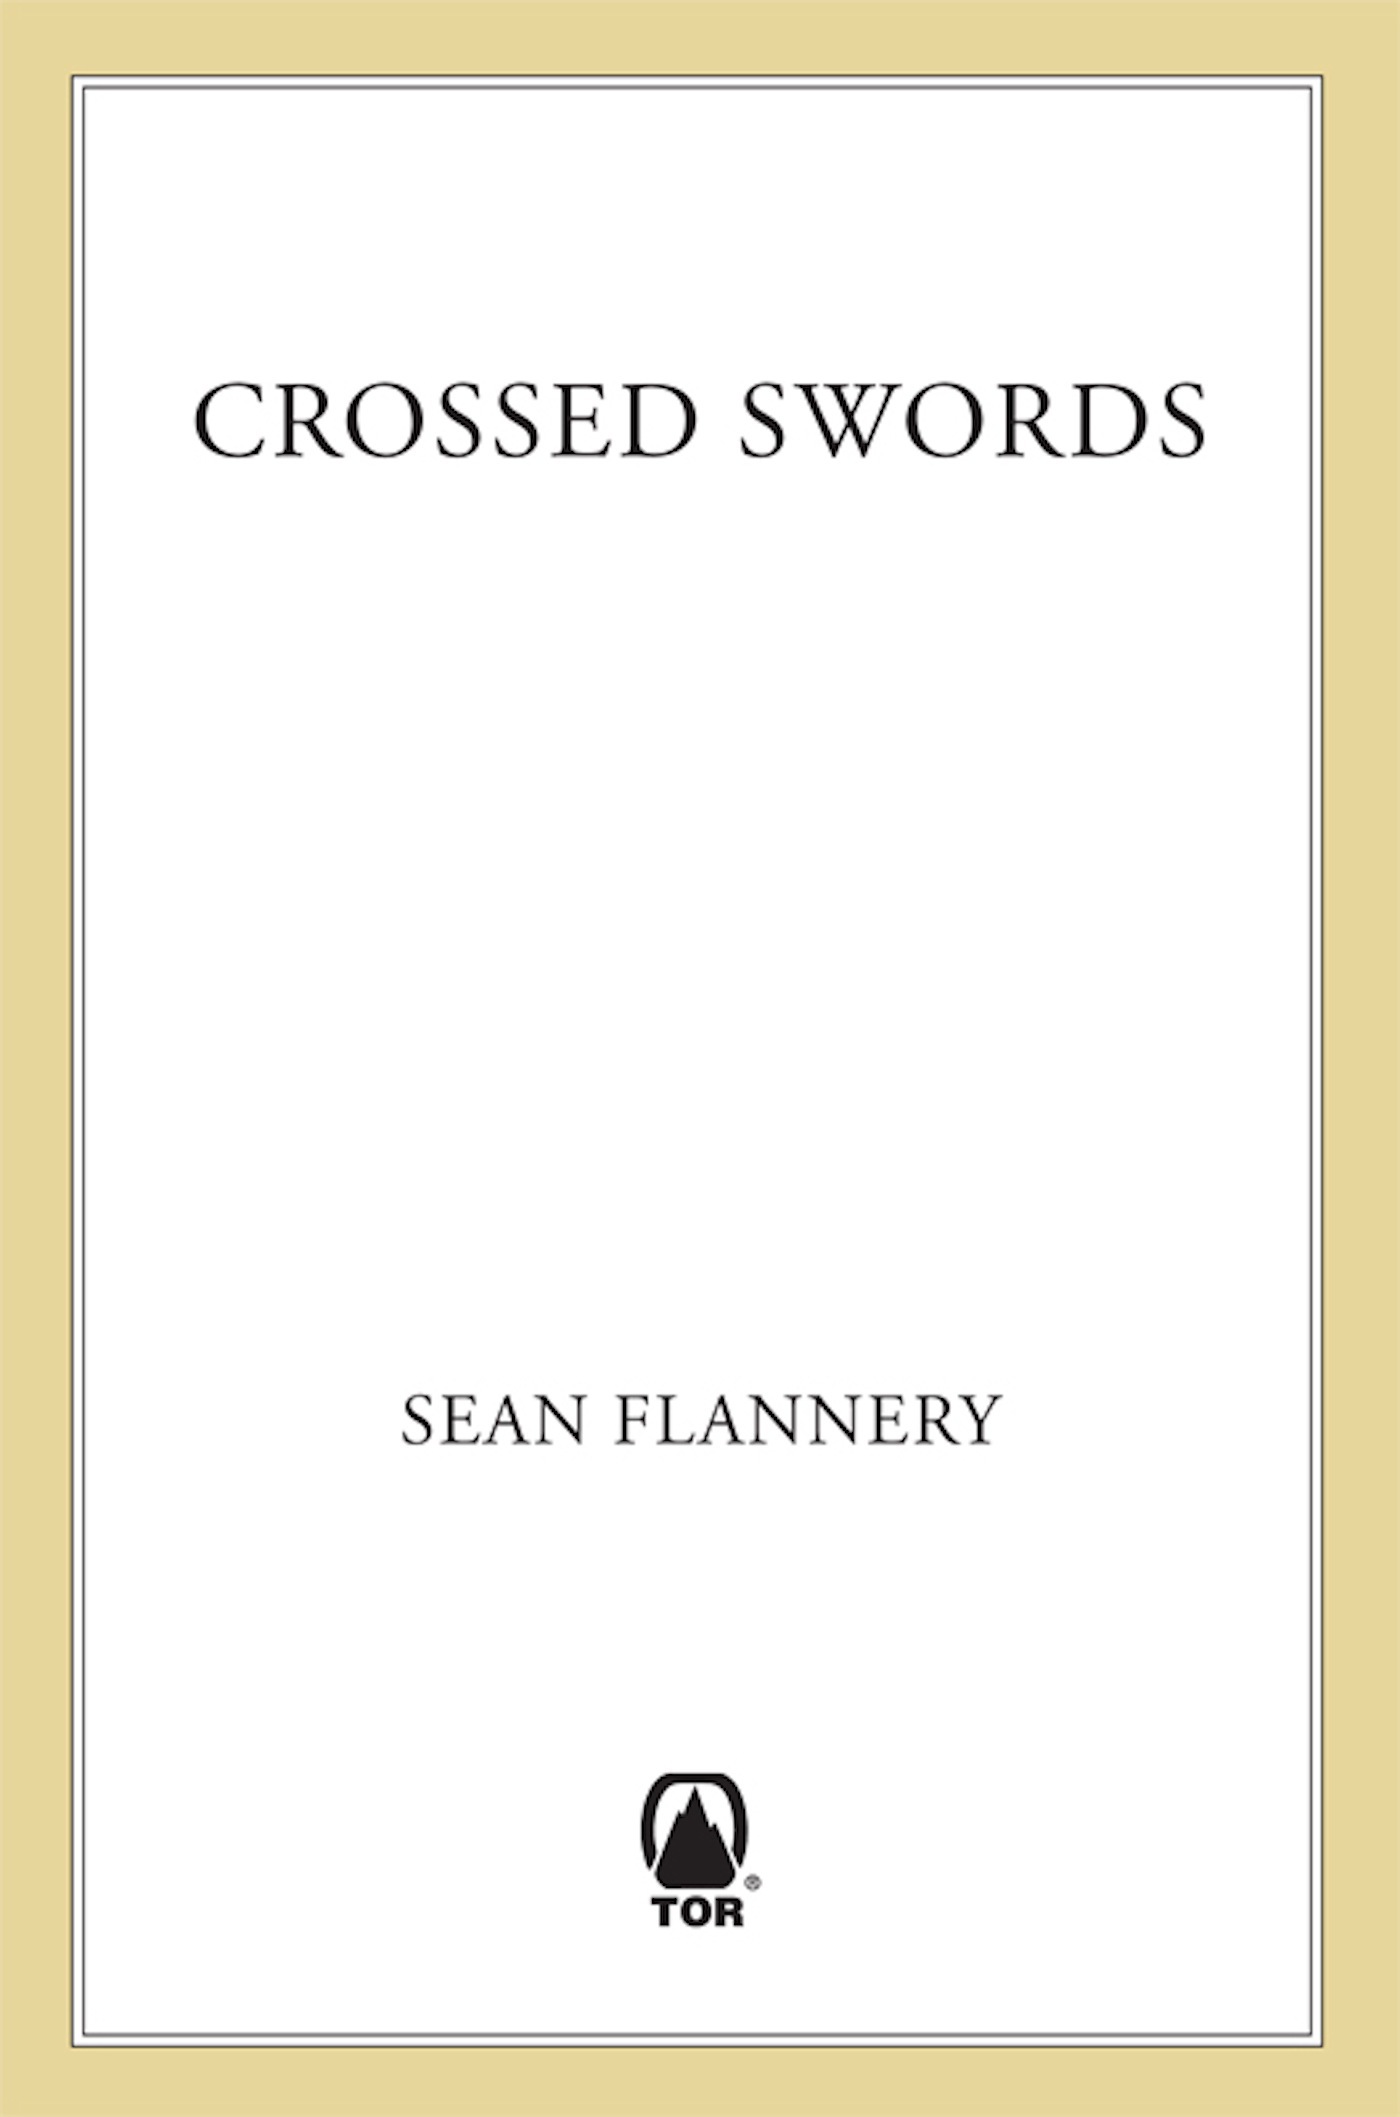 Crossed Swords by Sean Flannery